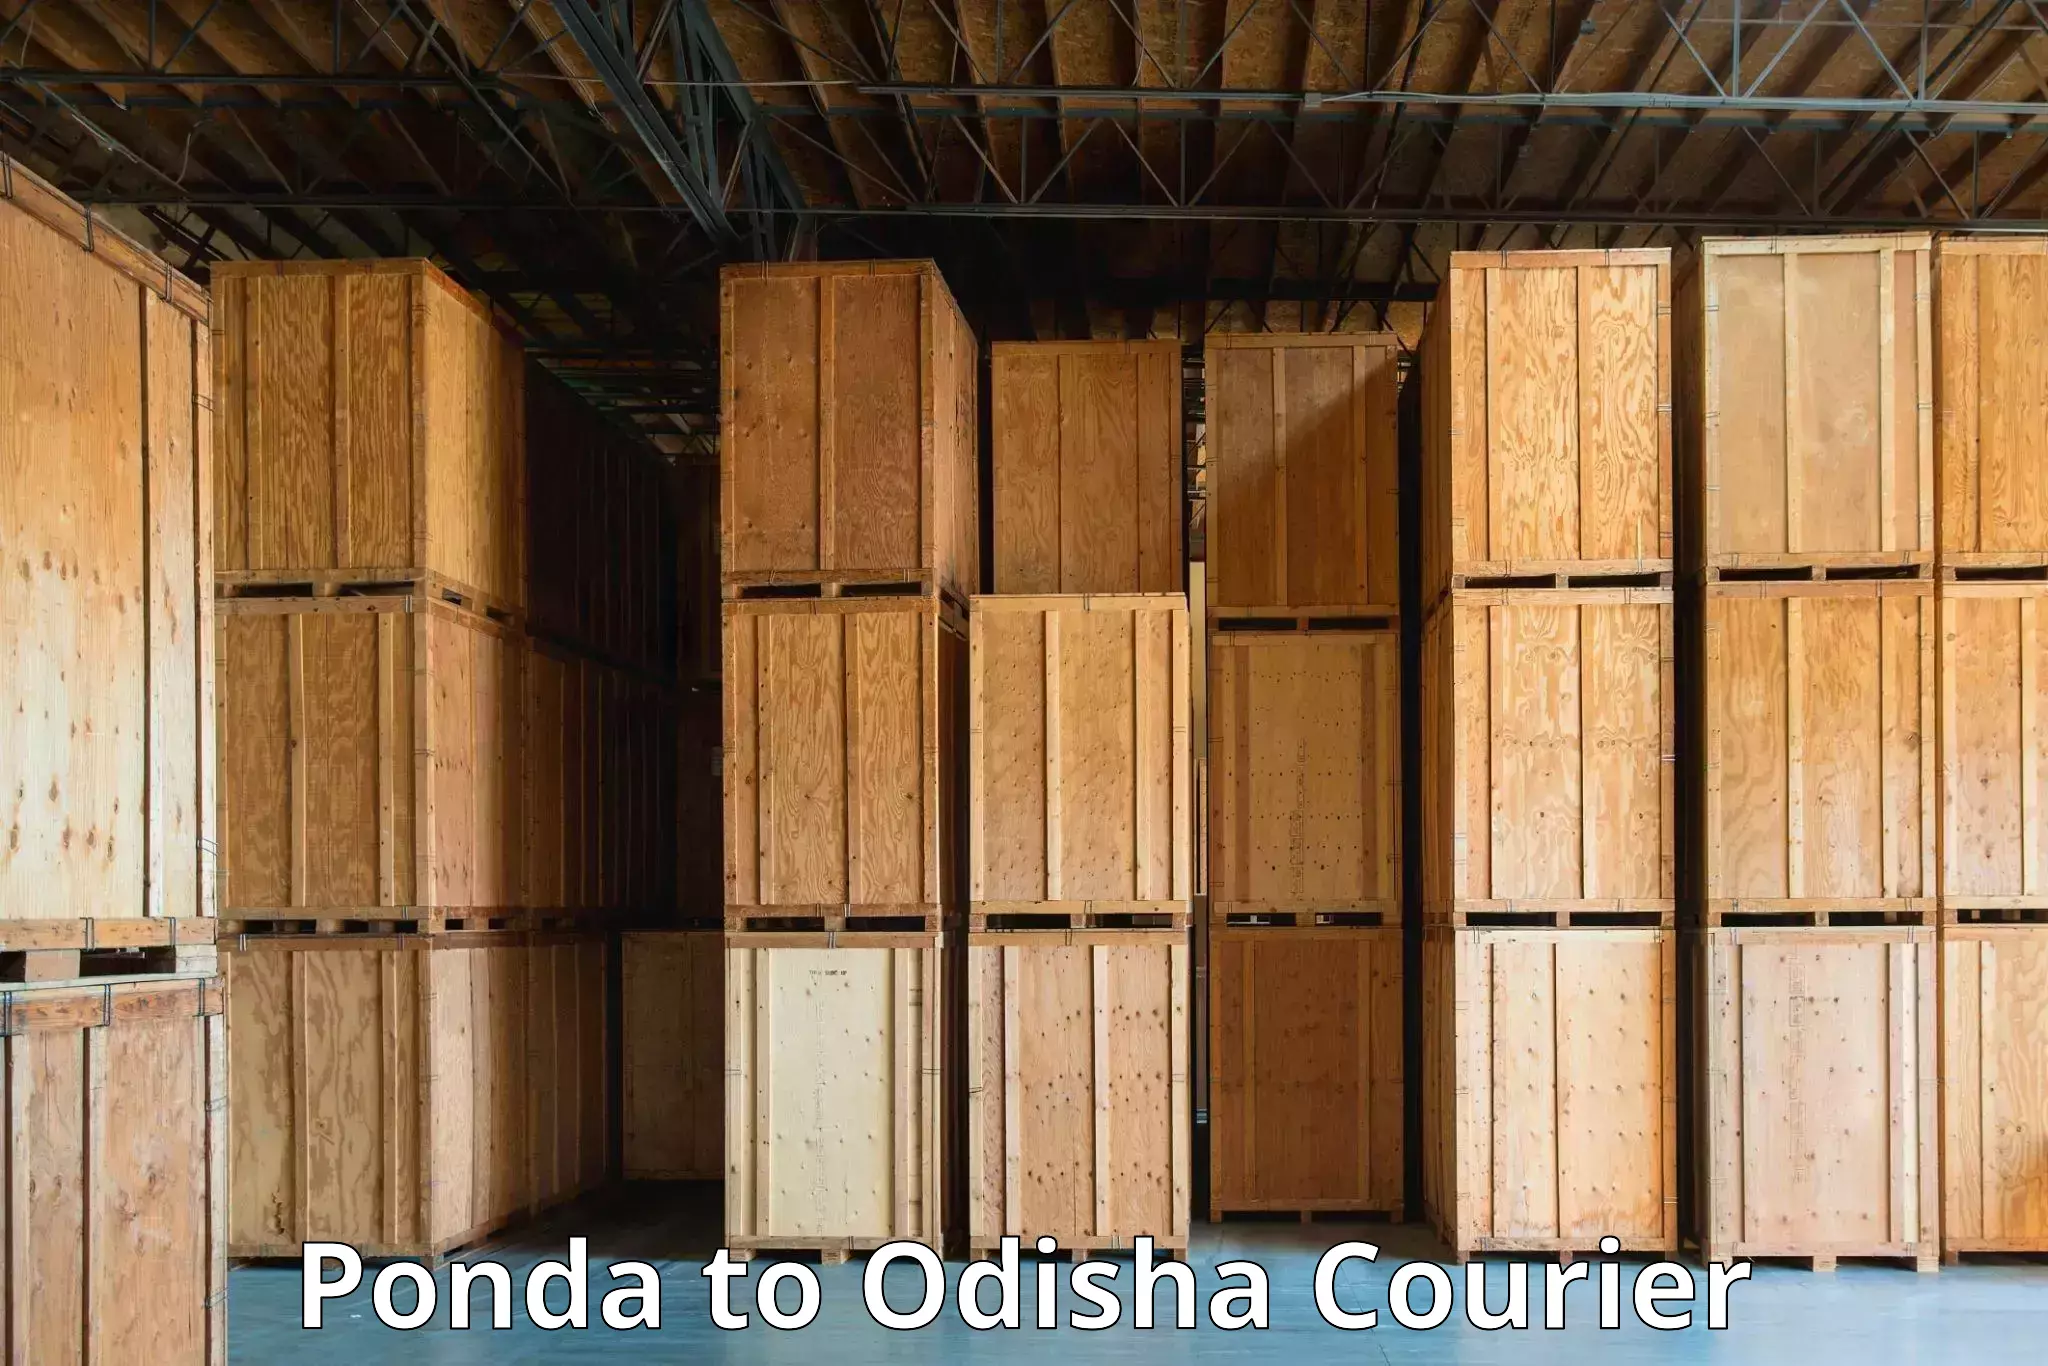 Courier rate comparison in Ponda to Boipariguda